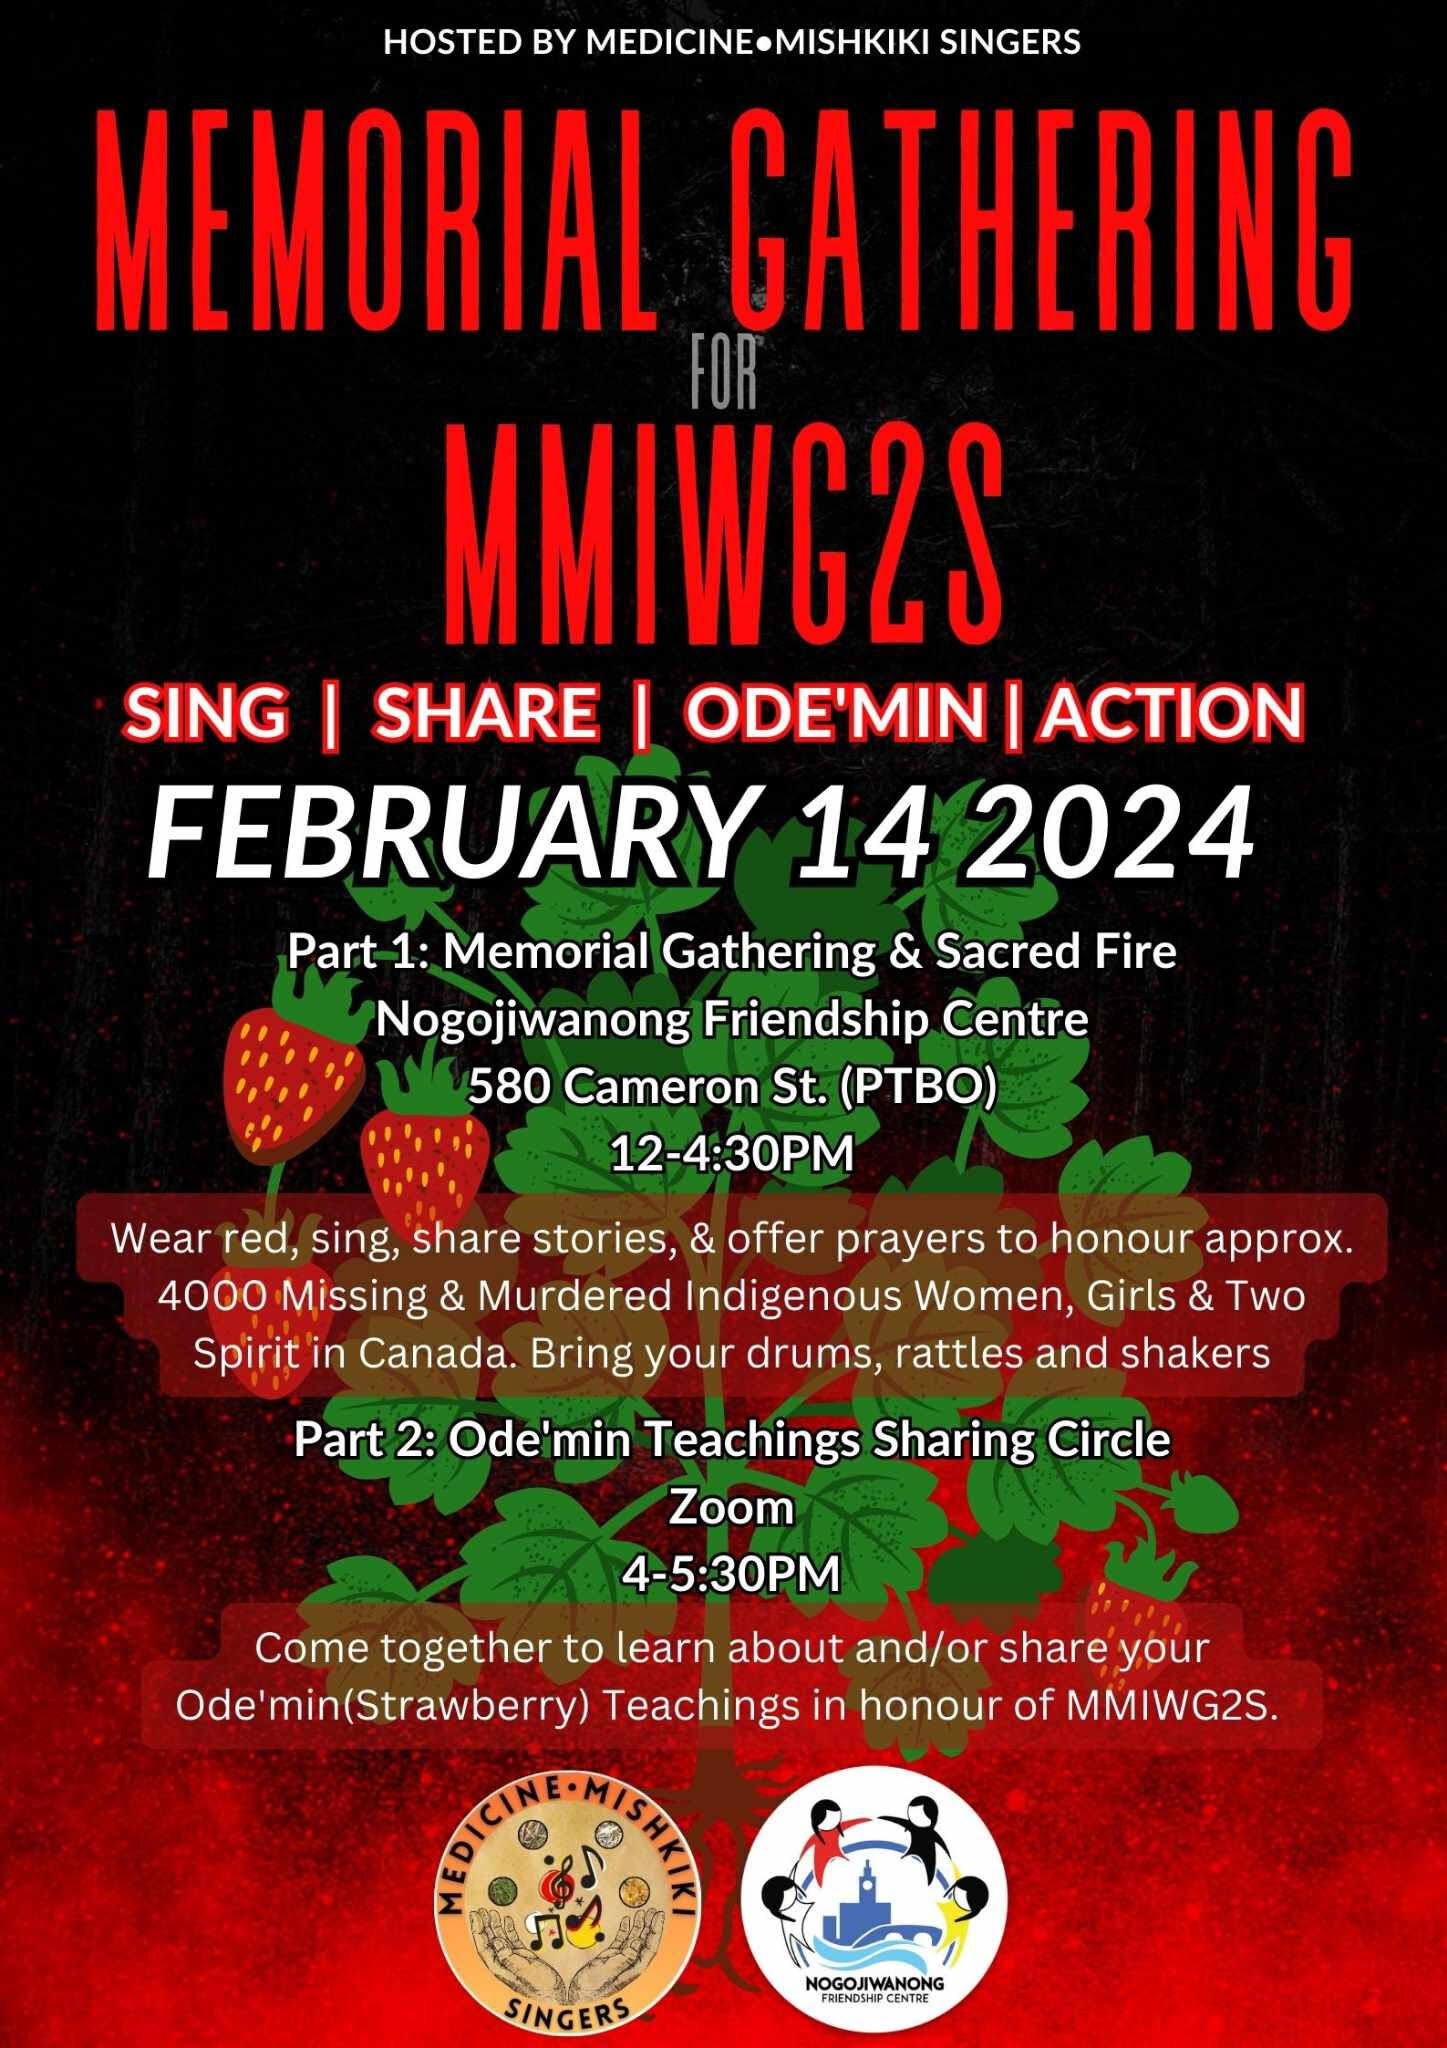 Memorial Gathering for MMIWG2S